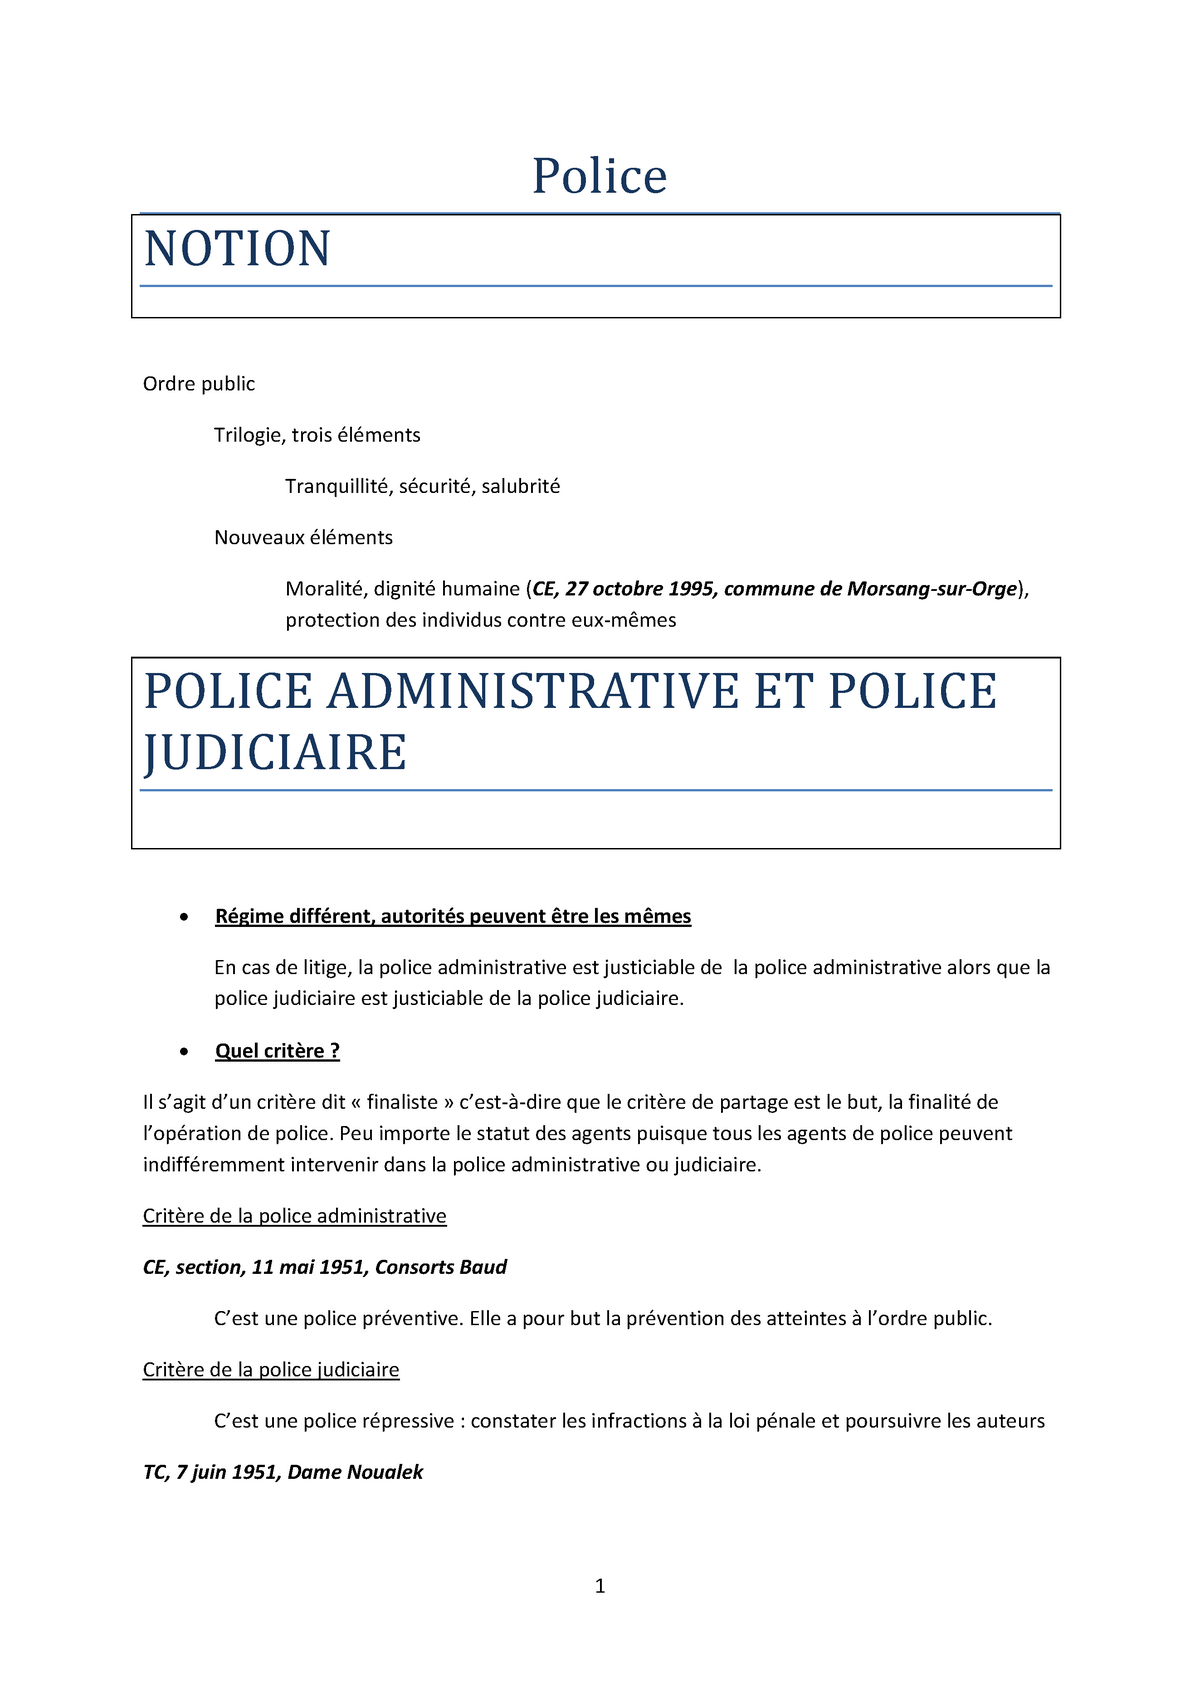 dissertation juridique sur la police administrative